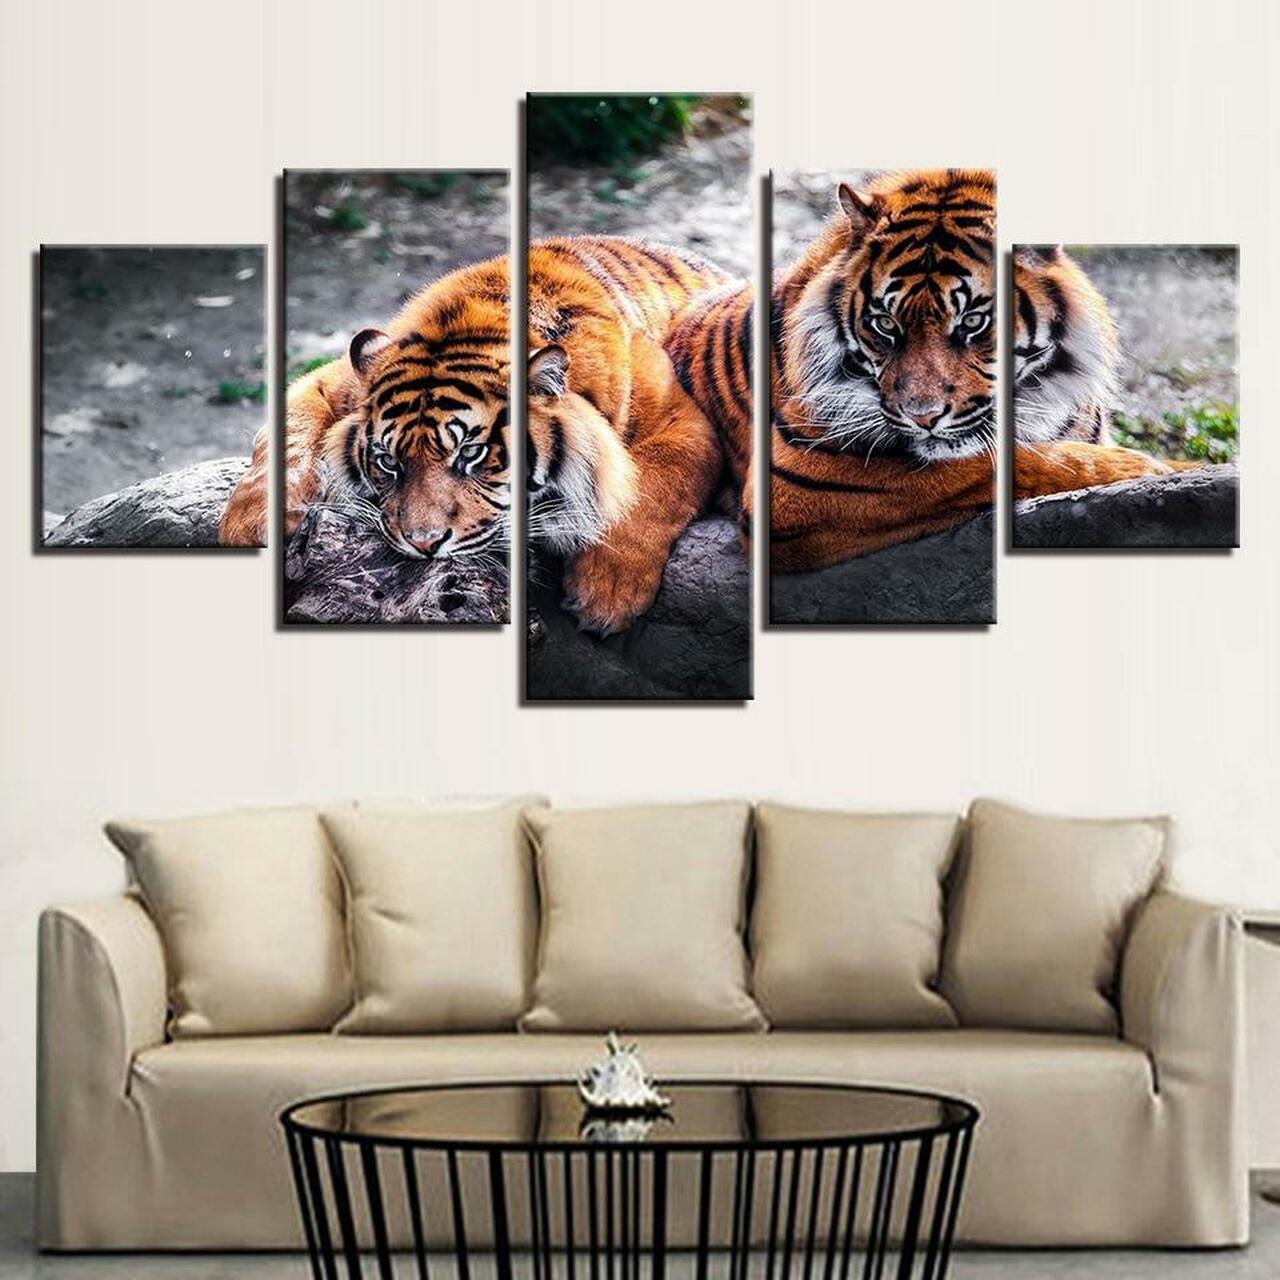 two tigers 5 pices peinture sur toile impression sur toile toile art pour la dcoration intrieurep1qal